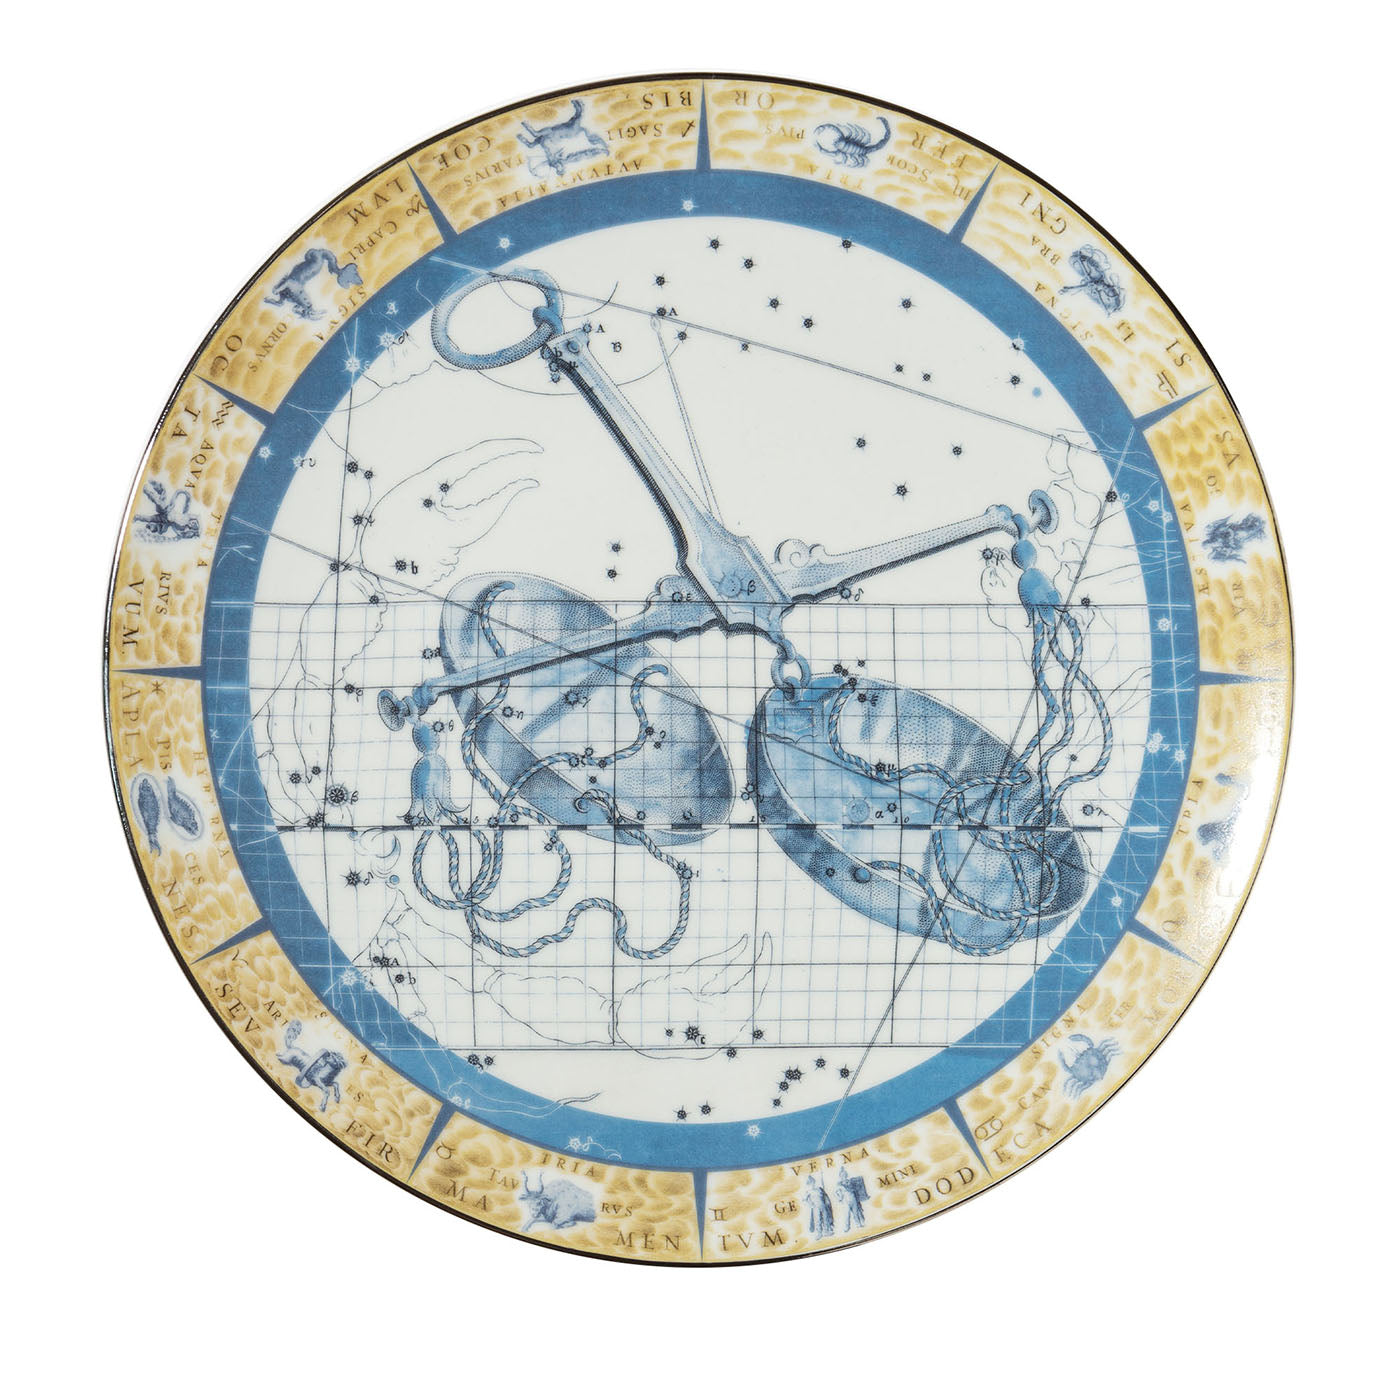 Zodiacus Libra decorative porcelain plate - Main view